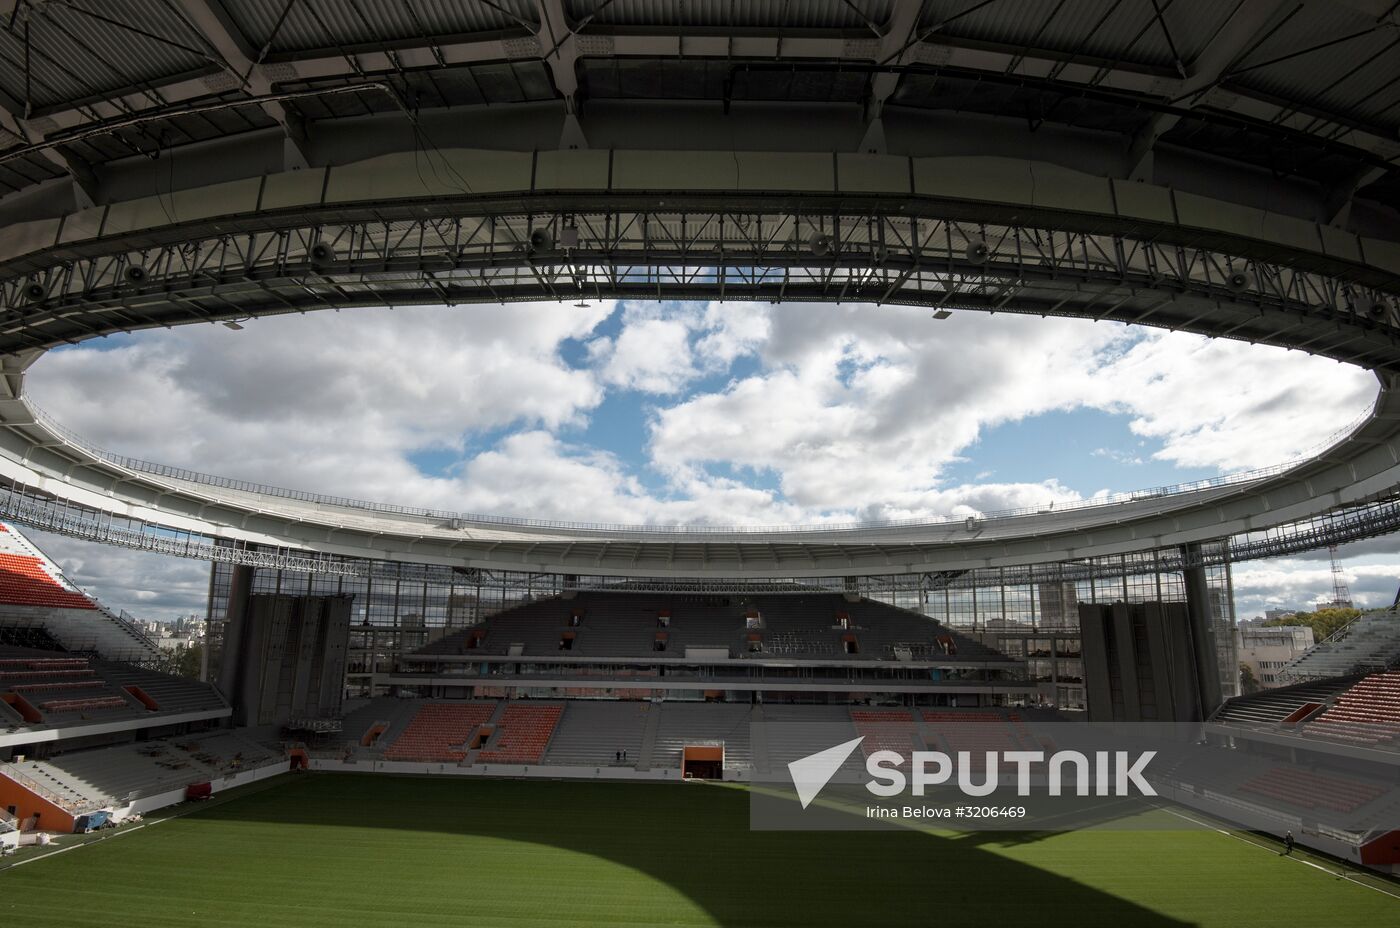 Tsentralny Stadium in Yekaterinburg undergoes reconstruction